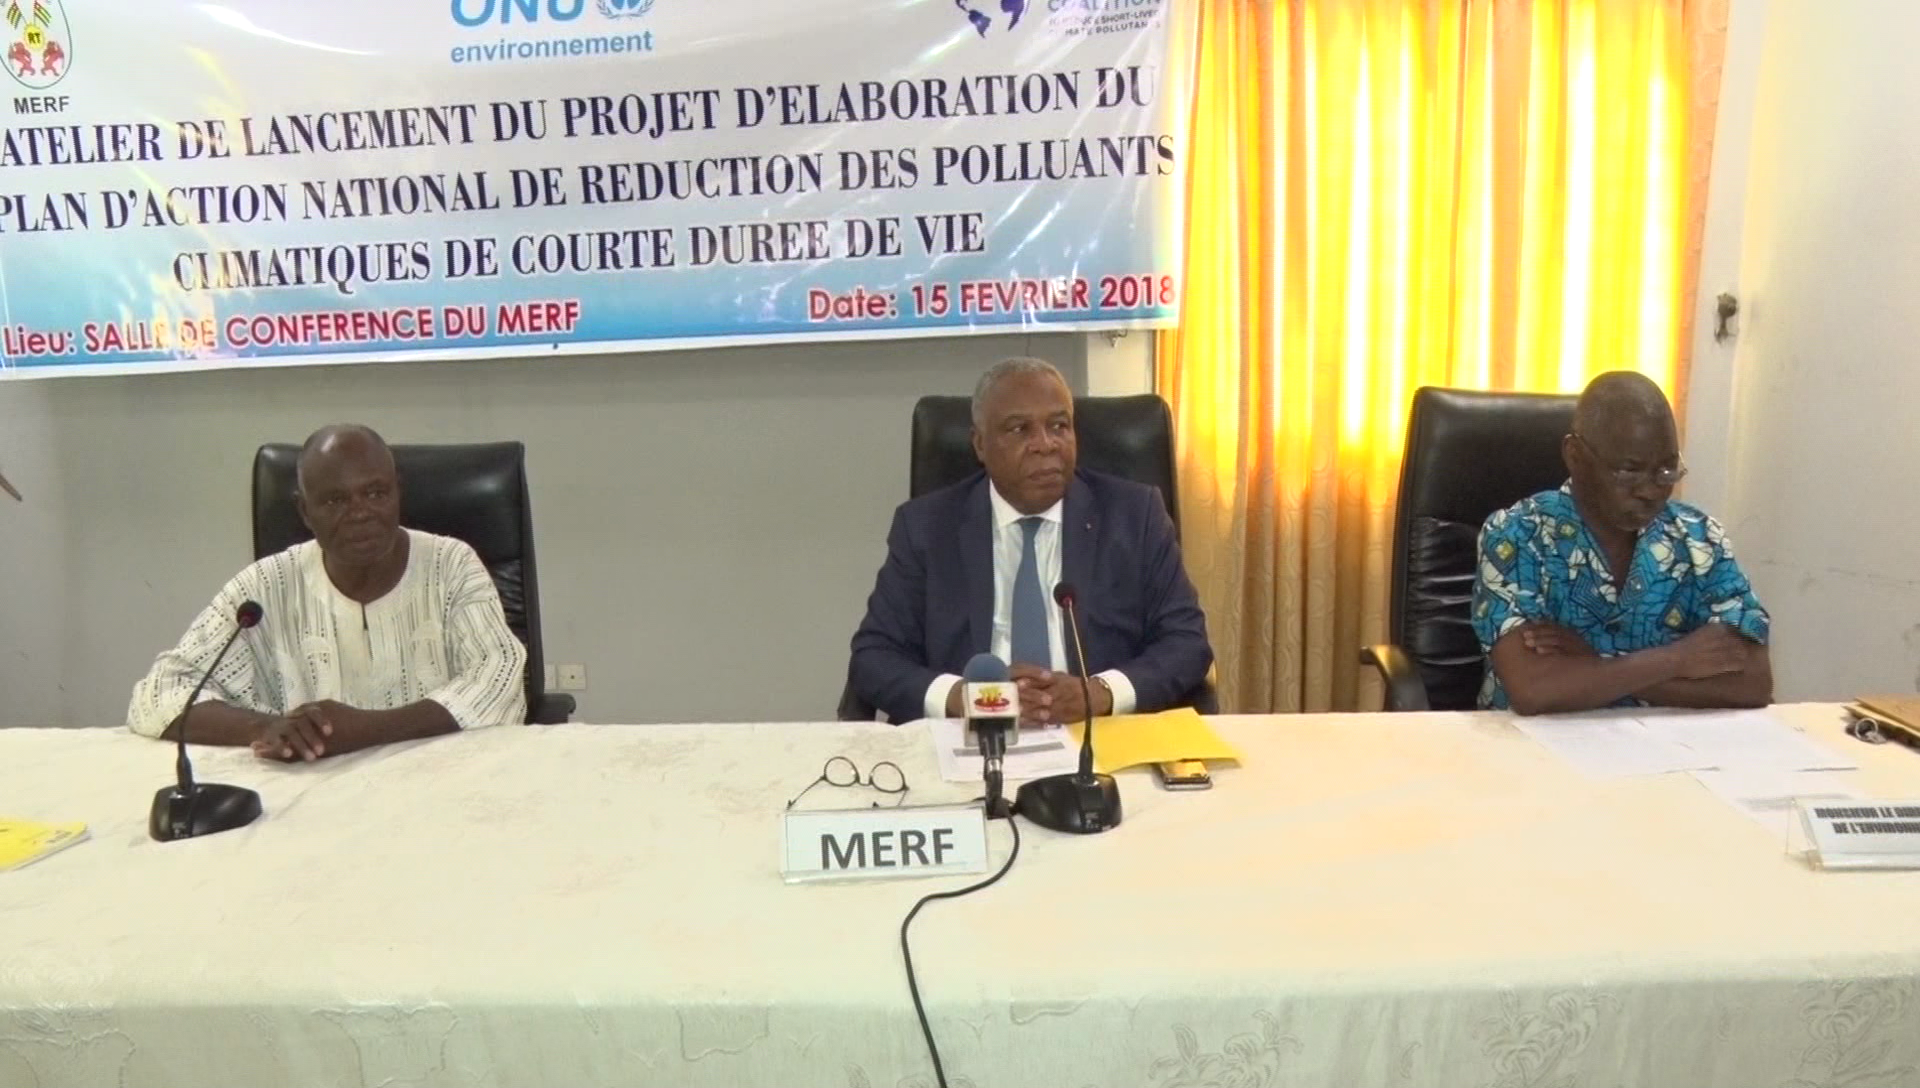  Le Togo se dote d’un plan de réduction des polluants climatiques de courte durée